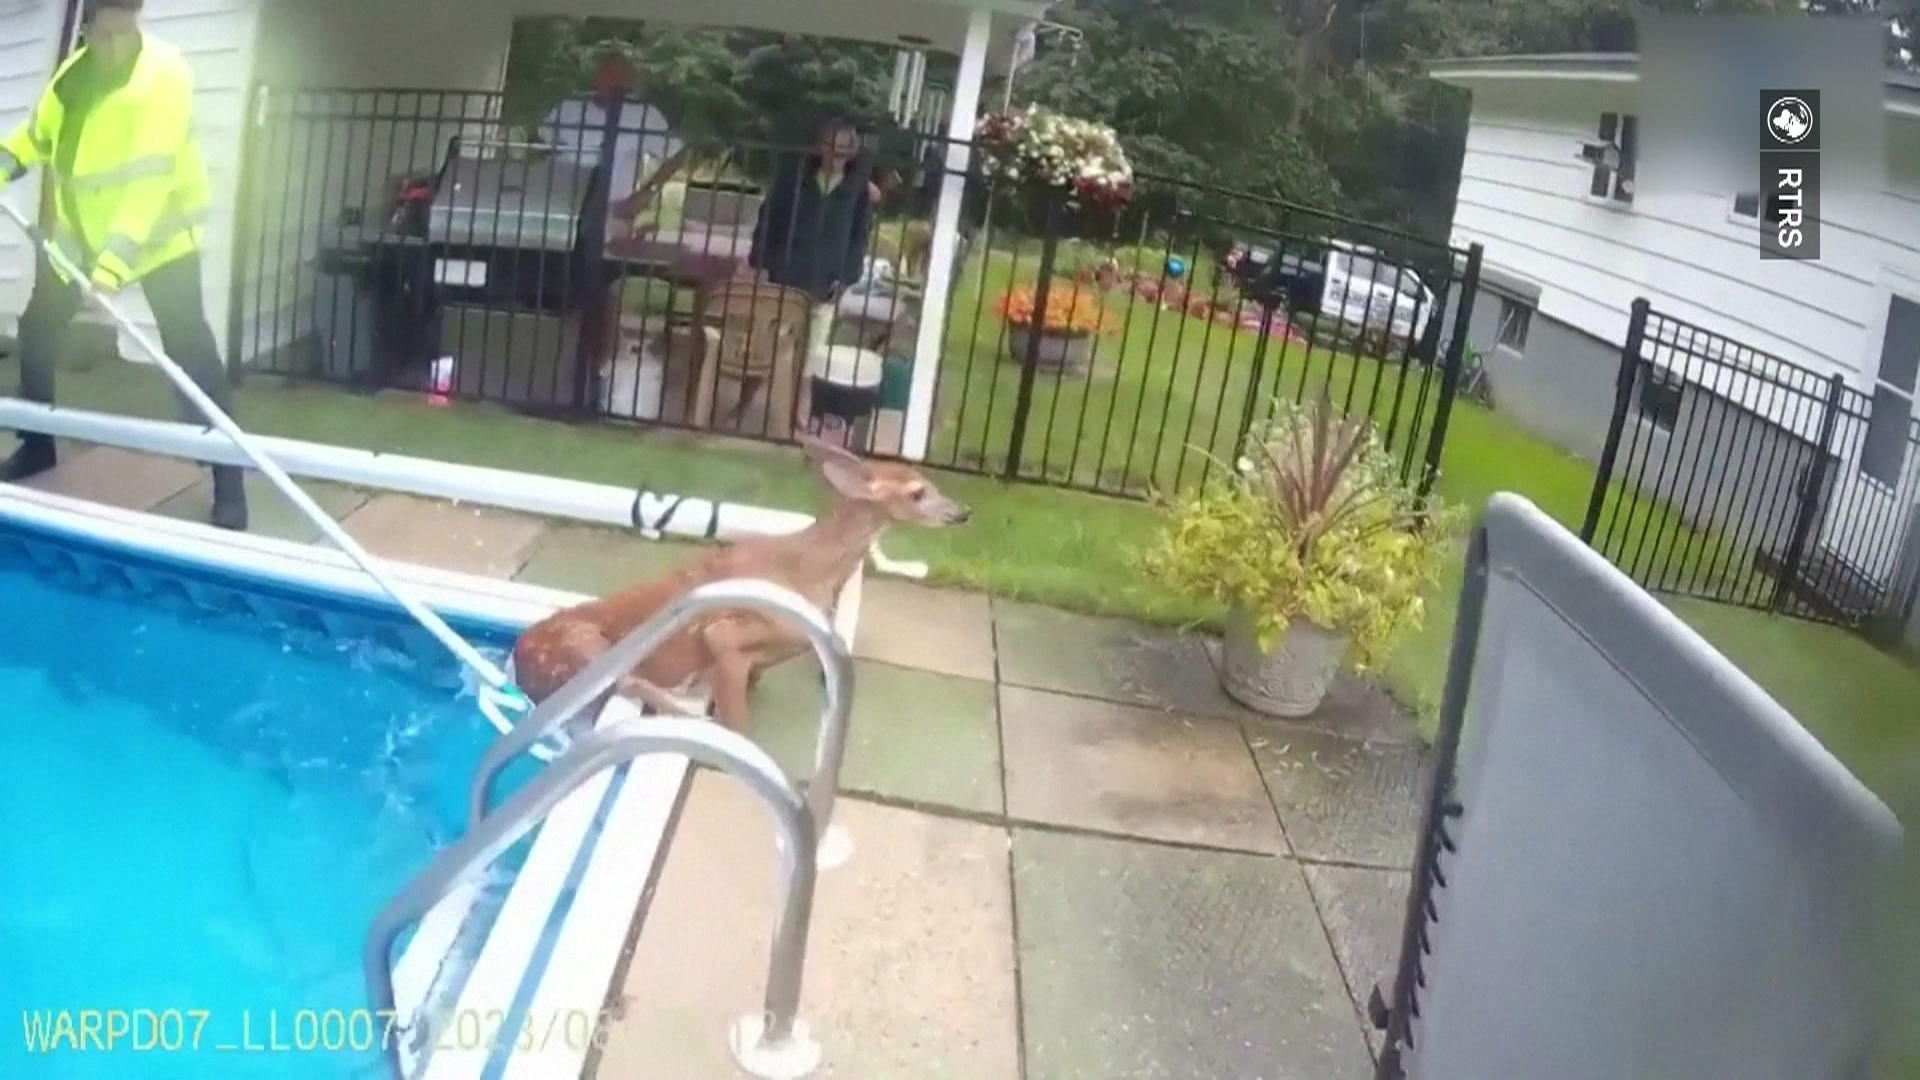 Polizisten retten Bambi aus Gartenpool Rehkitz drehte unerlaubt seine Runden